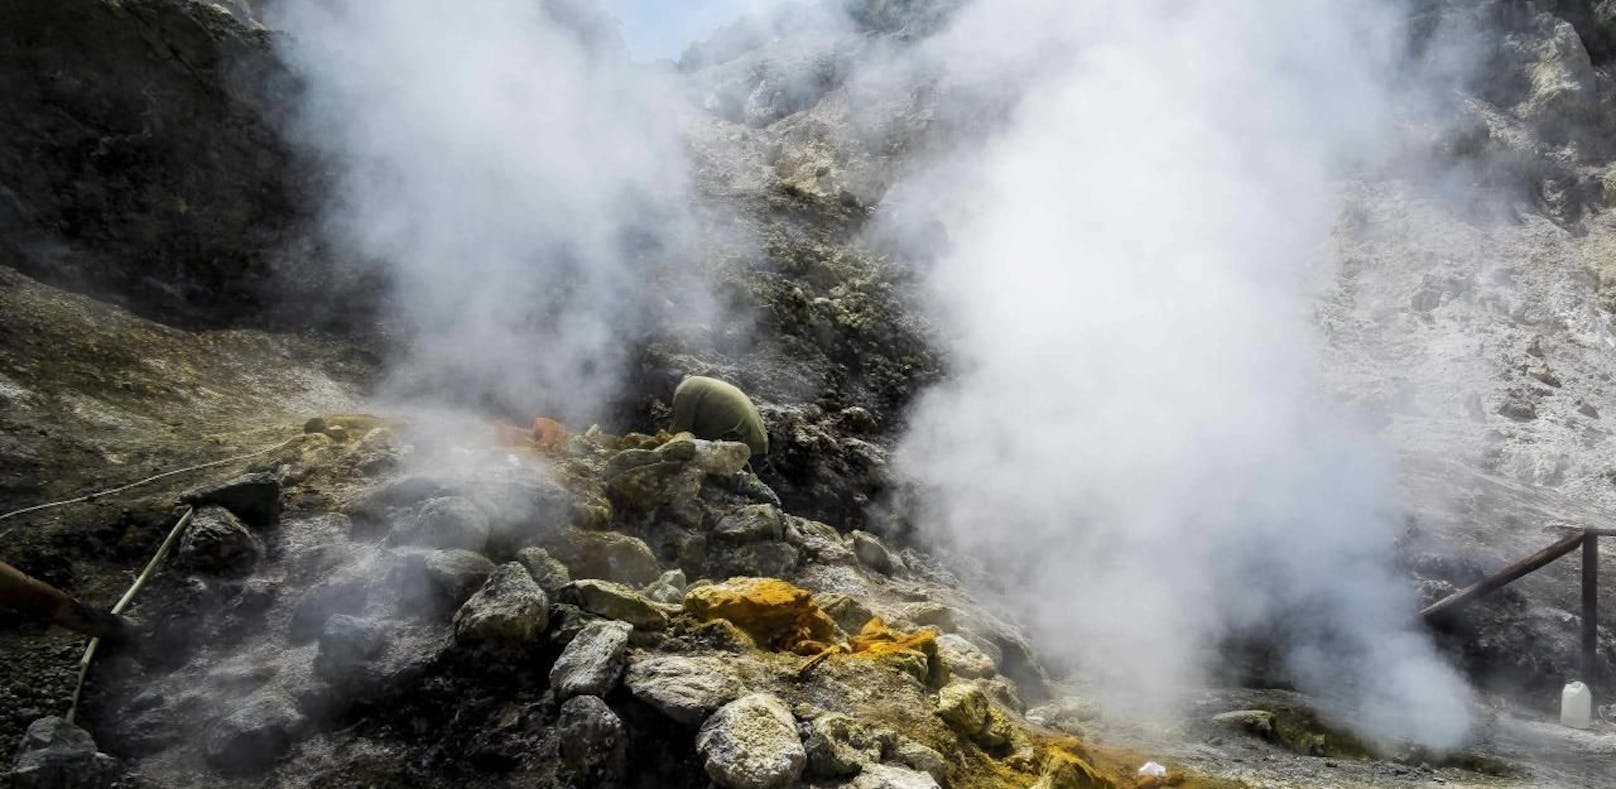 Neapel: Familie stirbt nach Sturz in Vulkankrater